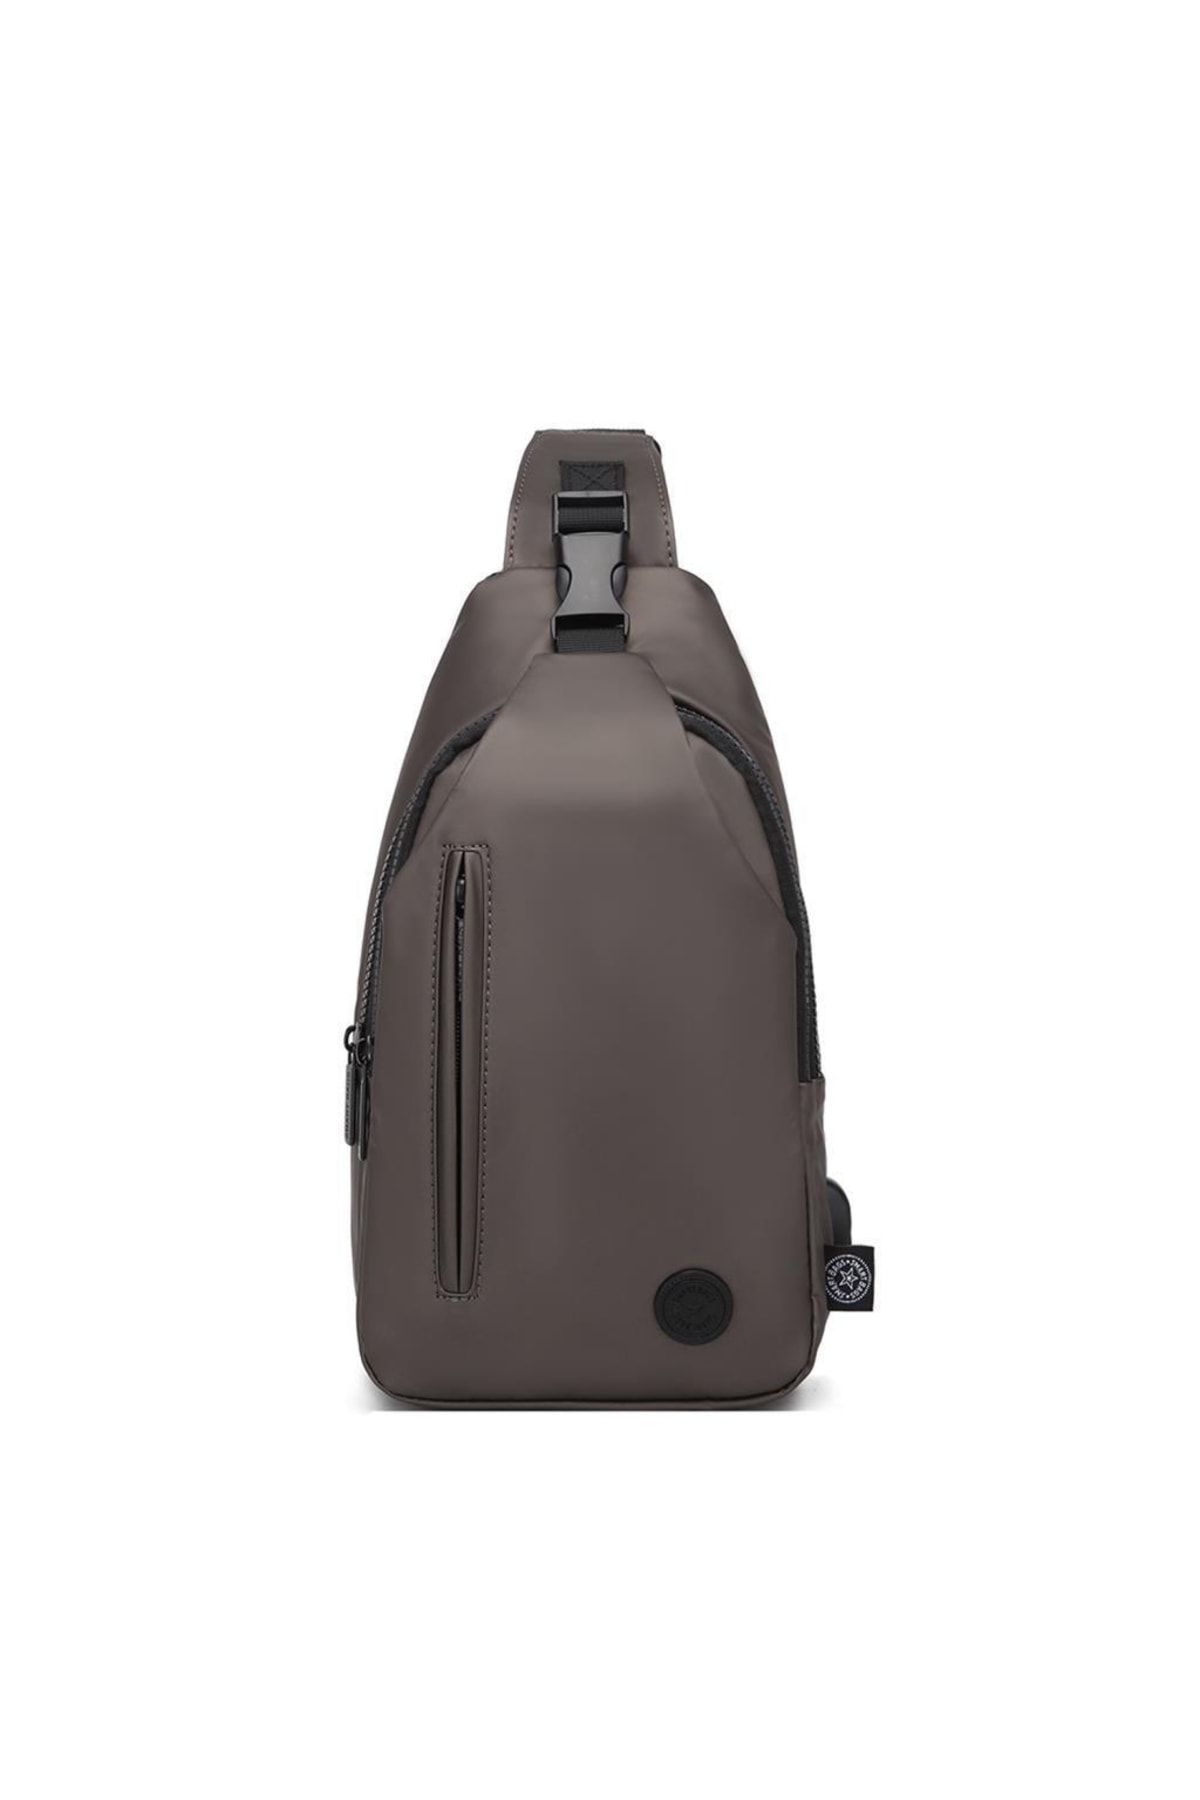 Smart Bags Gumi Kumaş Uniseks Bodybag Omuz Çantası 8654 Bakır